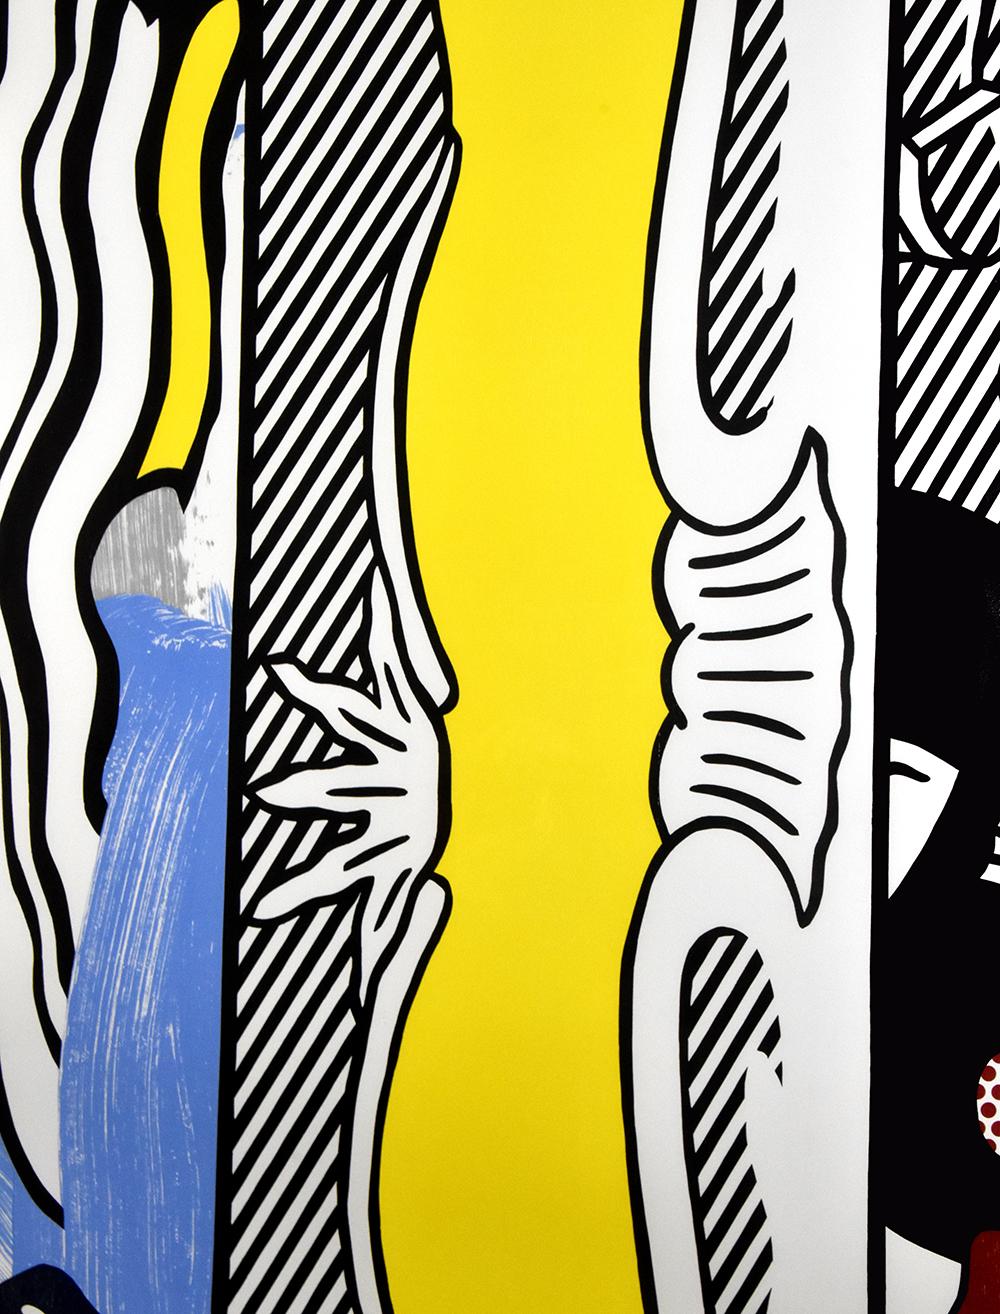 Roy Lichtenstein Two Paintings : Dagwood, 1984 est une œuvre vive et colorée qui témoigne de l'habileté de l'œuvre variée de Lichtenstein. L'œuvre est centrée sur la juxtaposition de sujets qui évoquent l'histoire personnelle et artistique de